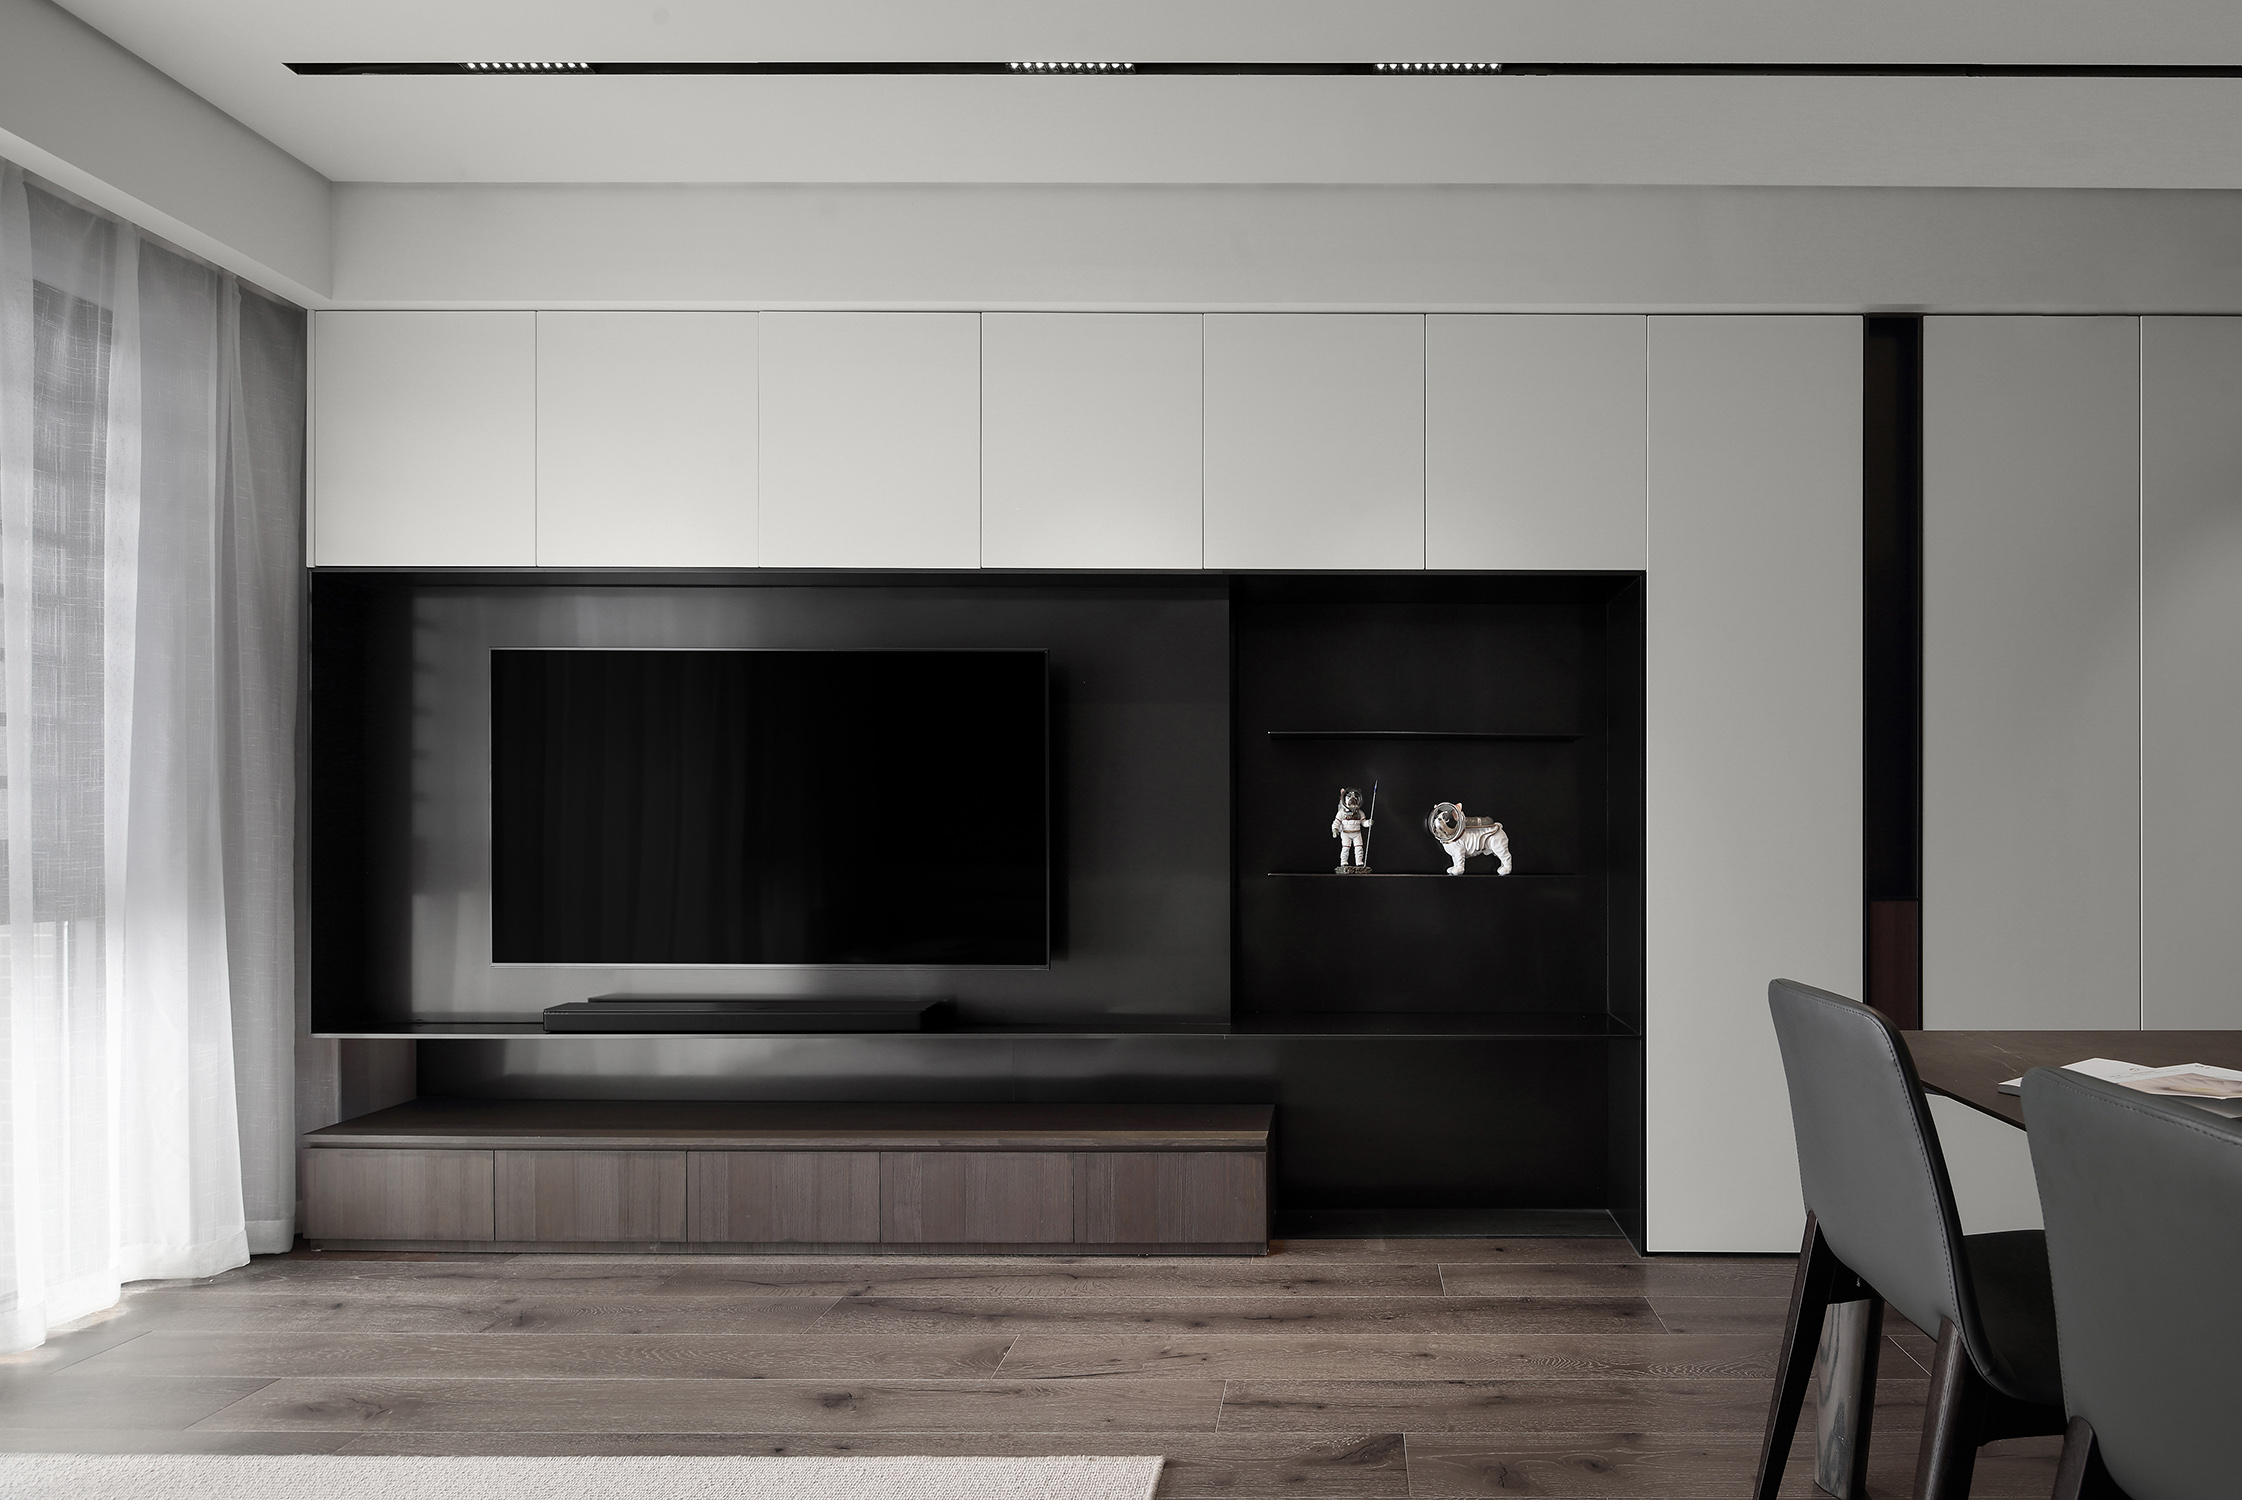 电视机背景墙使用黑笔色调打造,呈现出家的温馨舒适,让整个客厅看上去